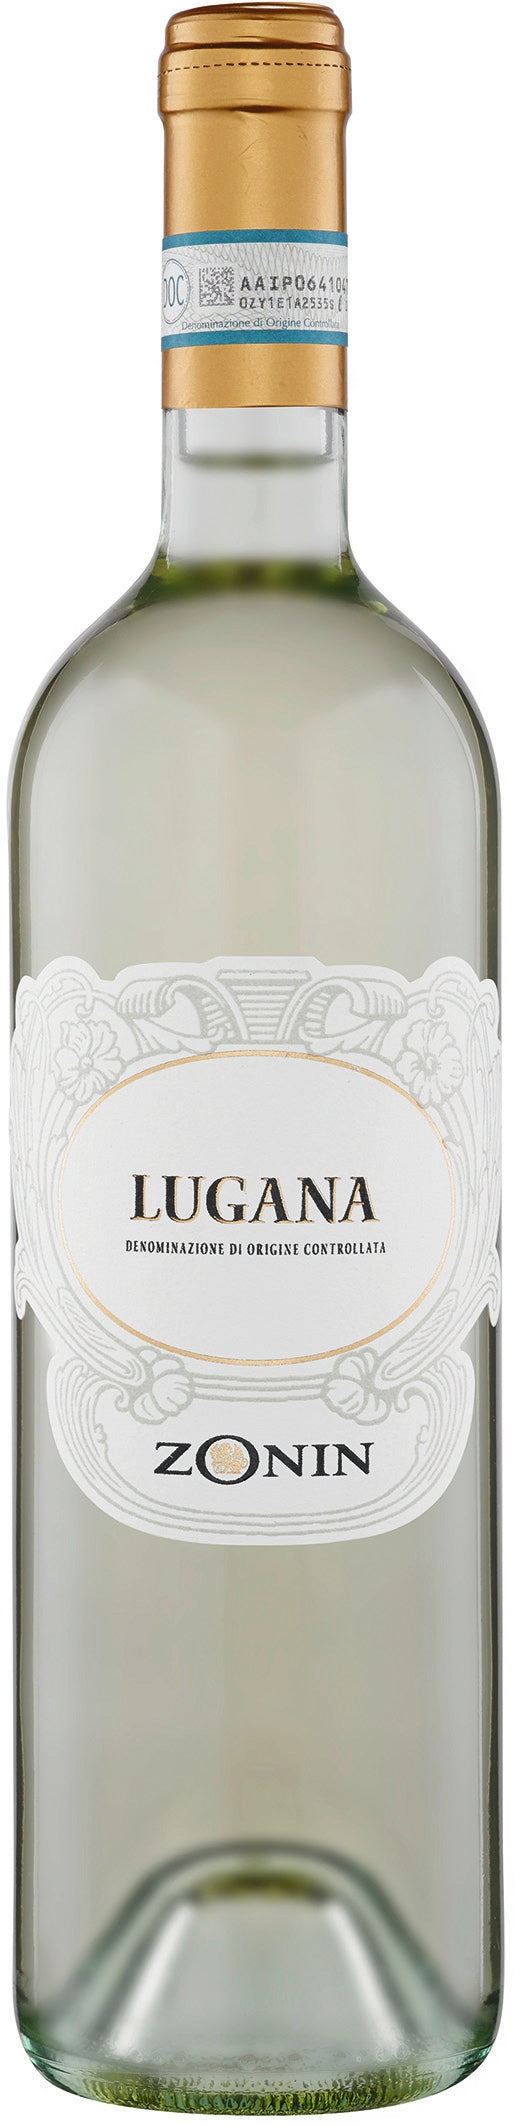 Zonin Lugana DOC Weißwein trocken saftig elegant aus Italien 750ml 12,5% Vol